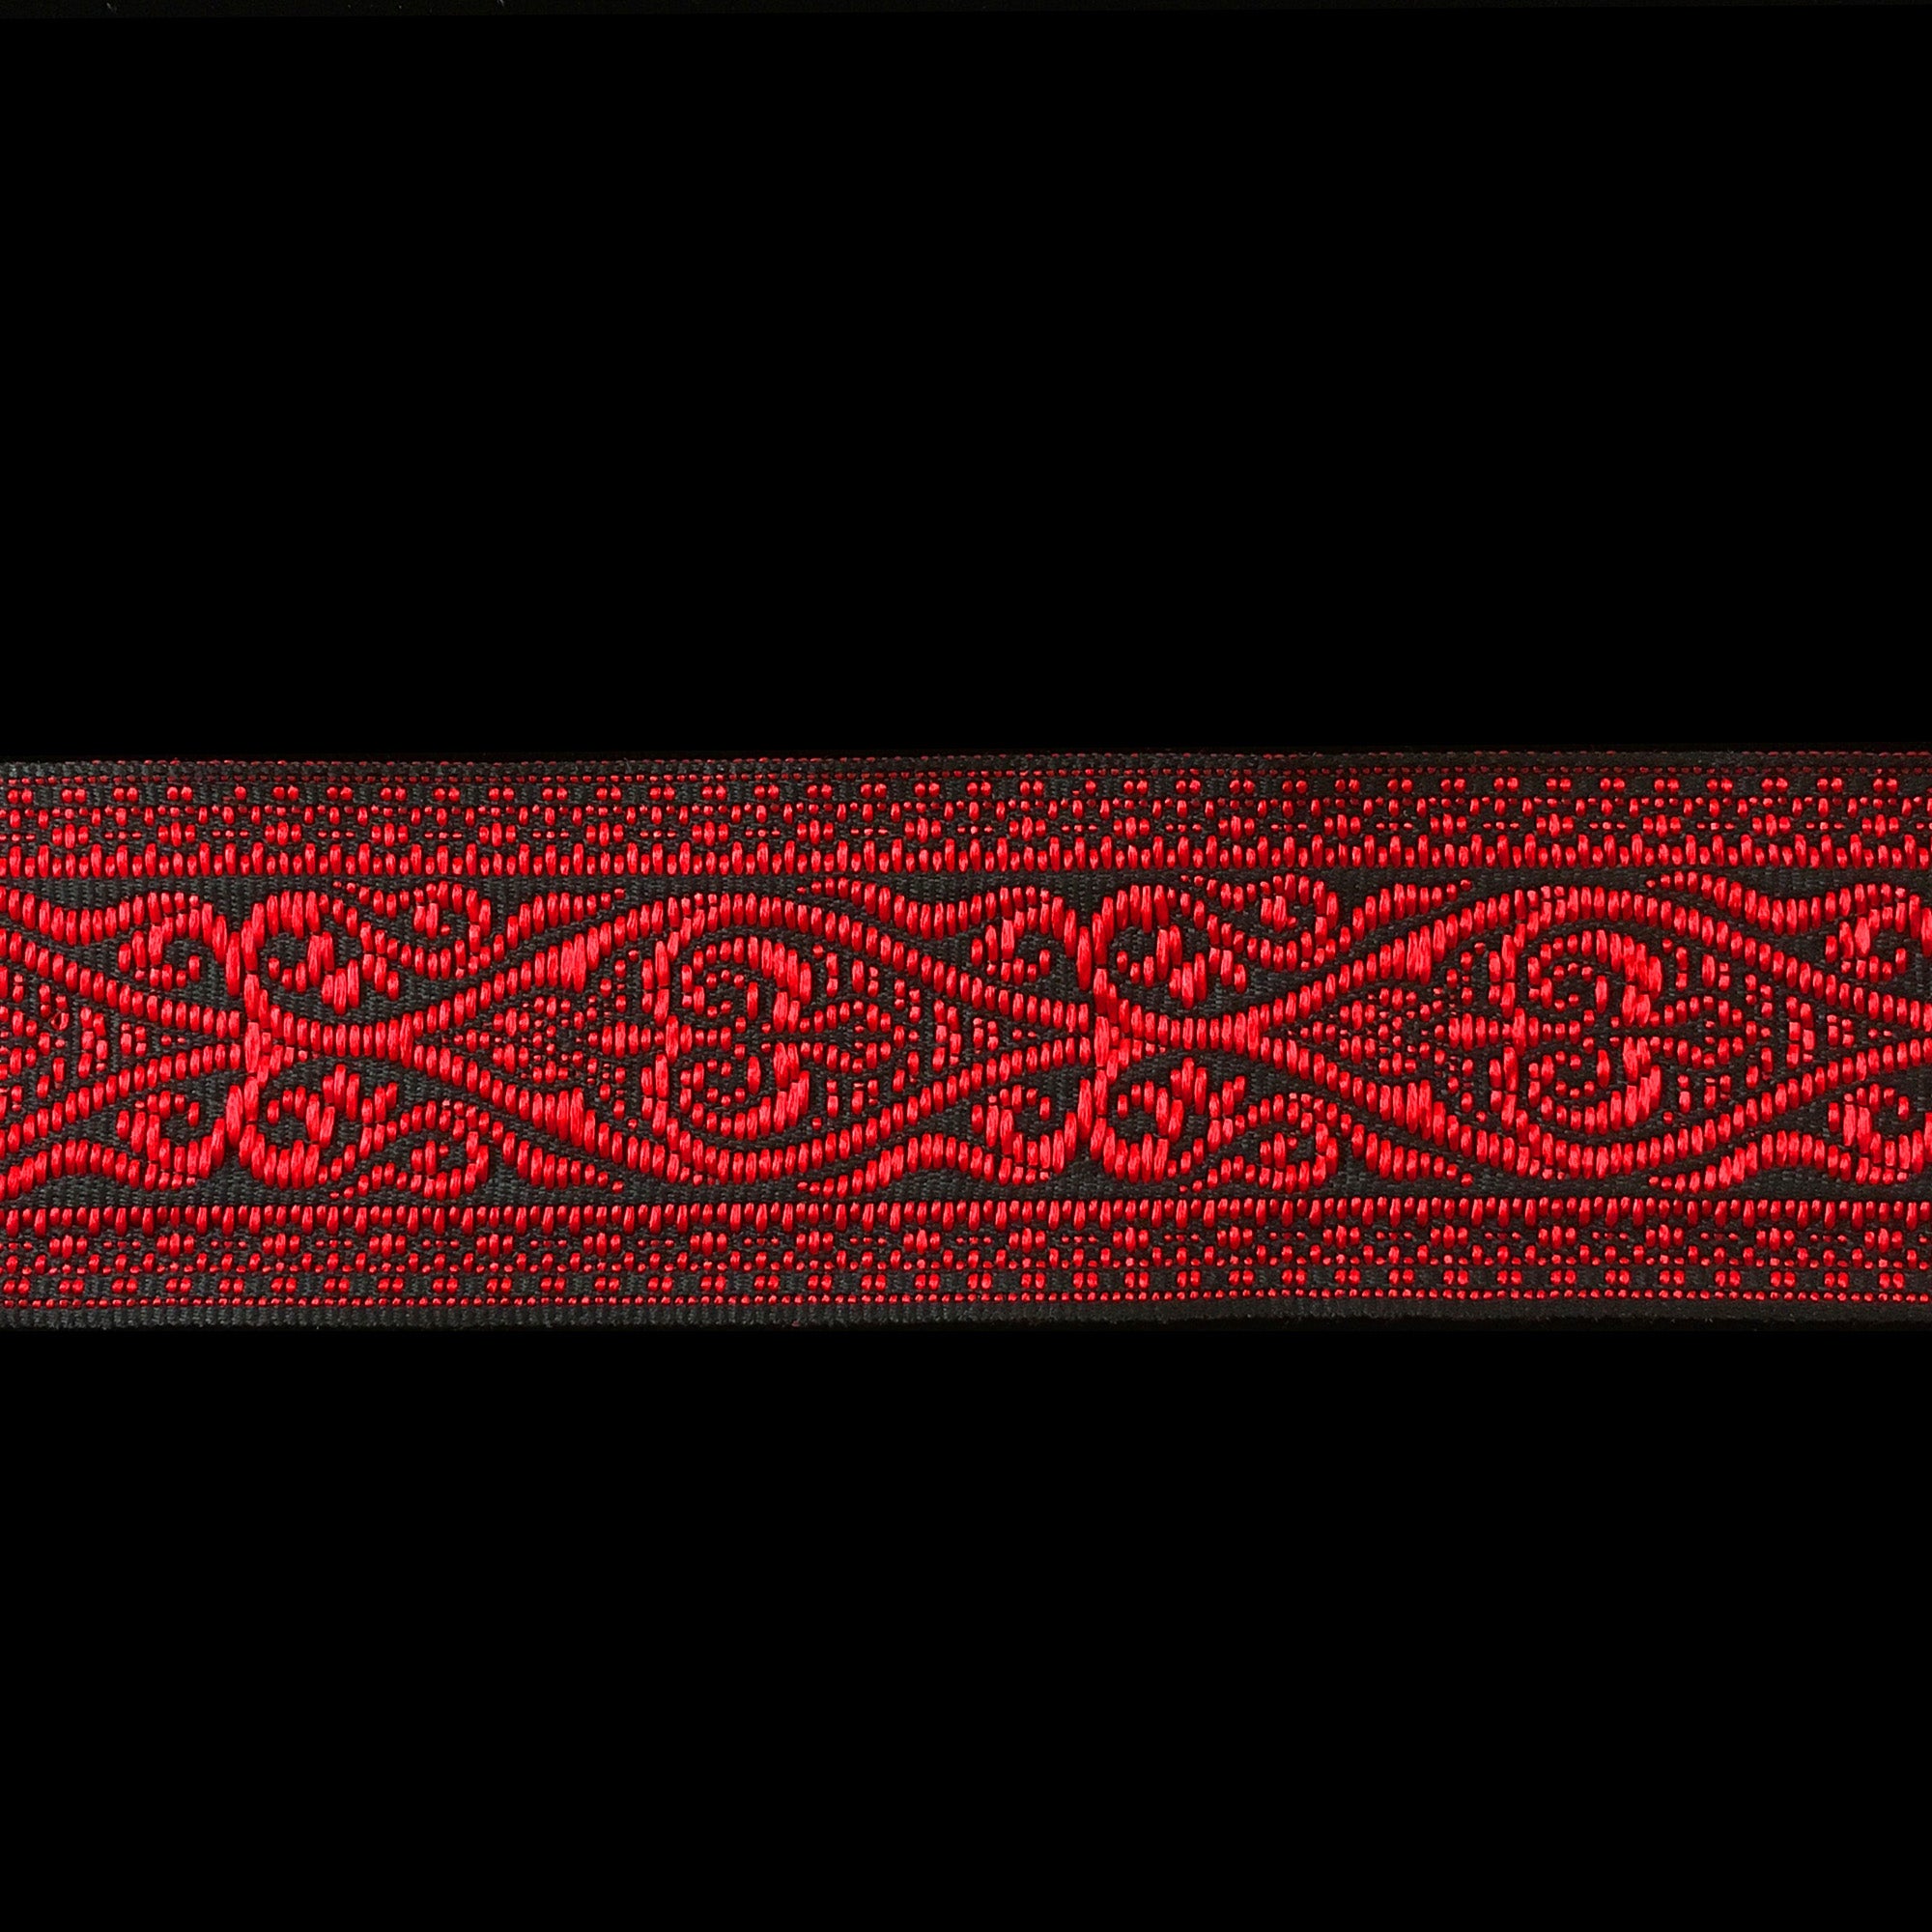 494.7 Jacquard trim "Esterhazy" red and black glossy - 1-3/8" (35mm)